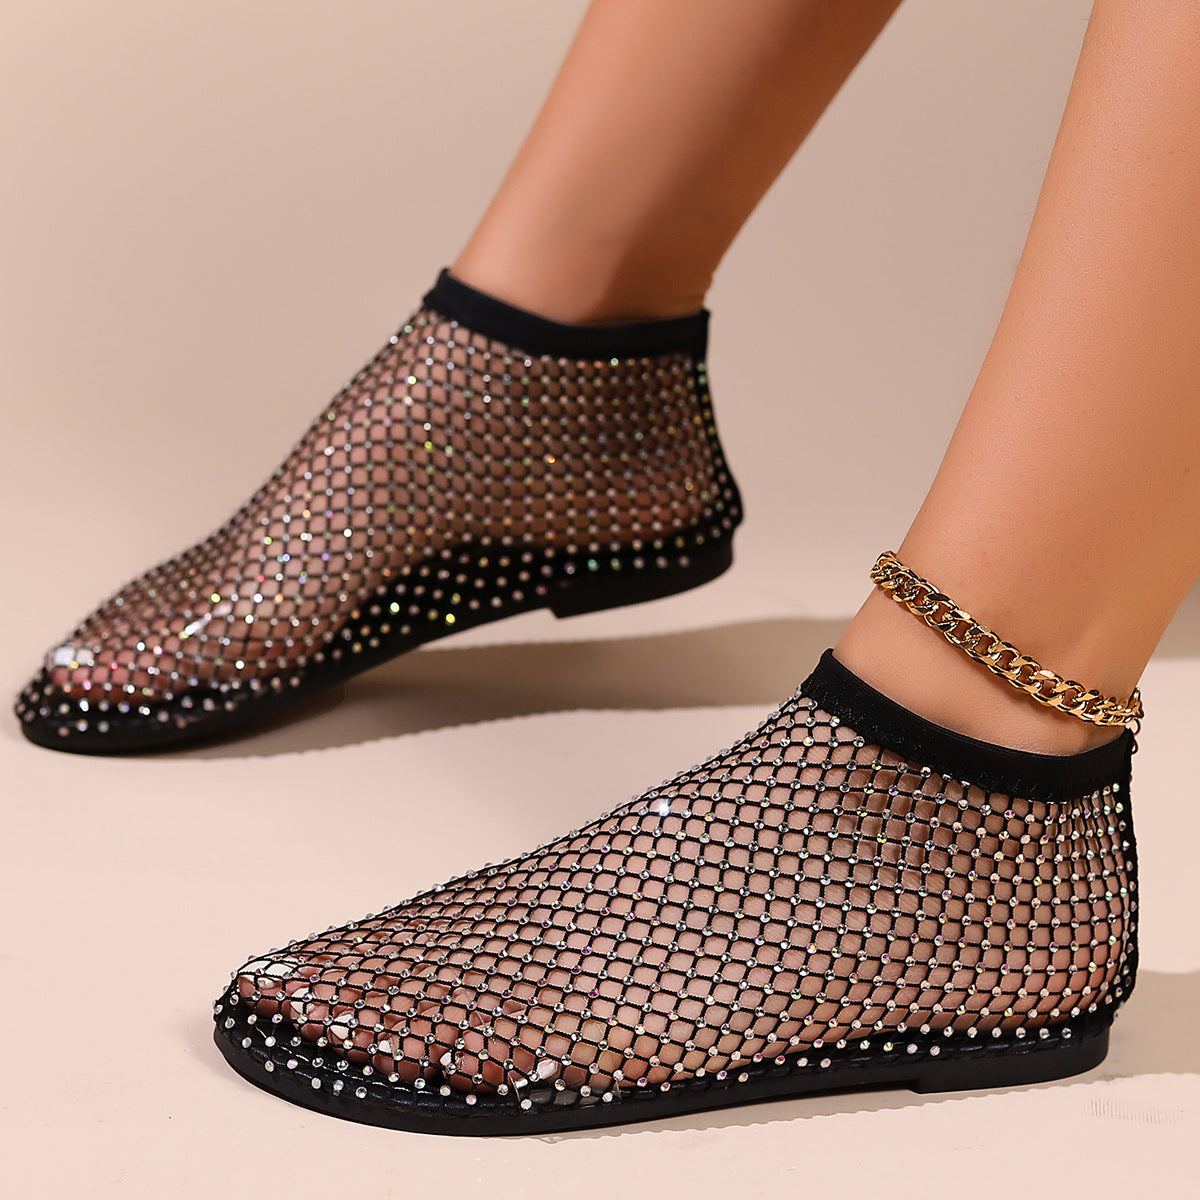 Kändisars platta sandaler med dekor av strass